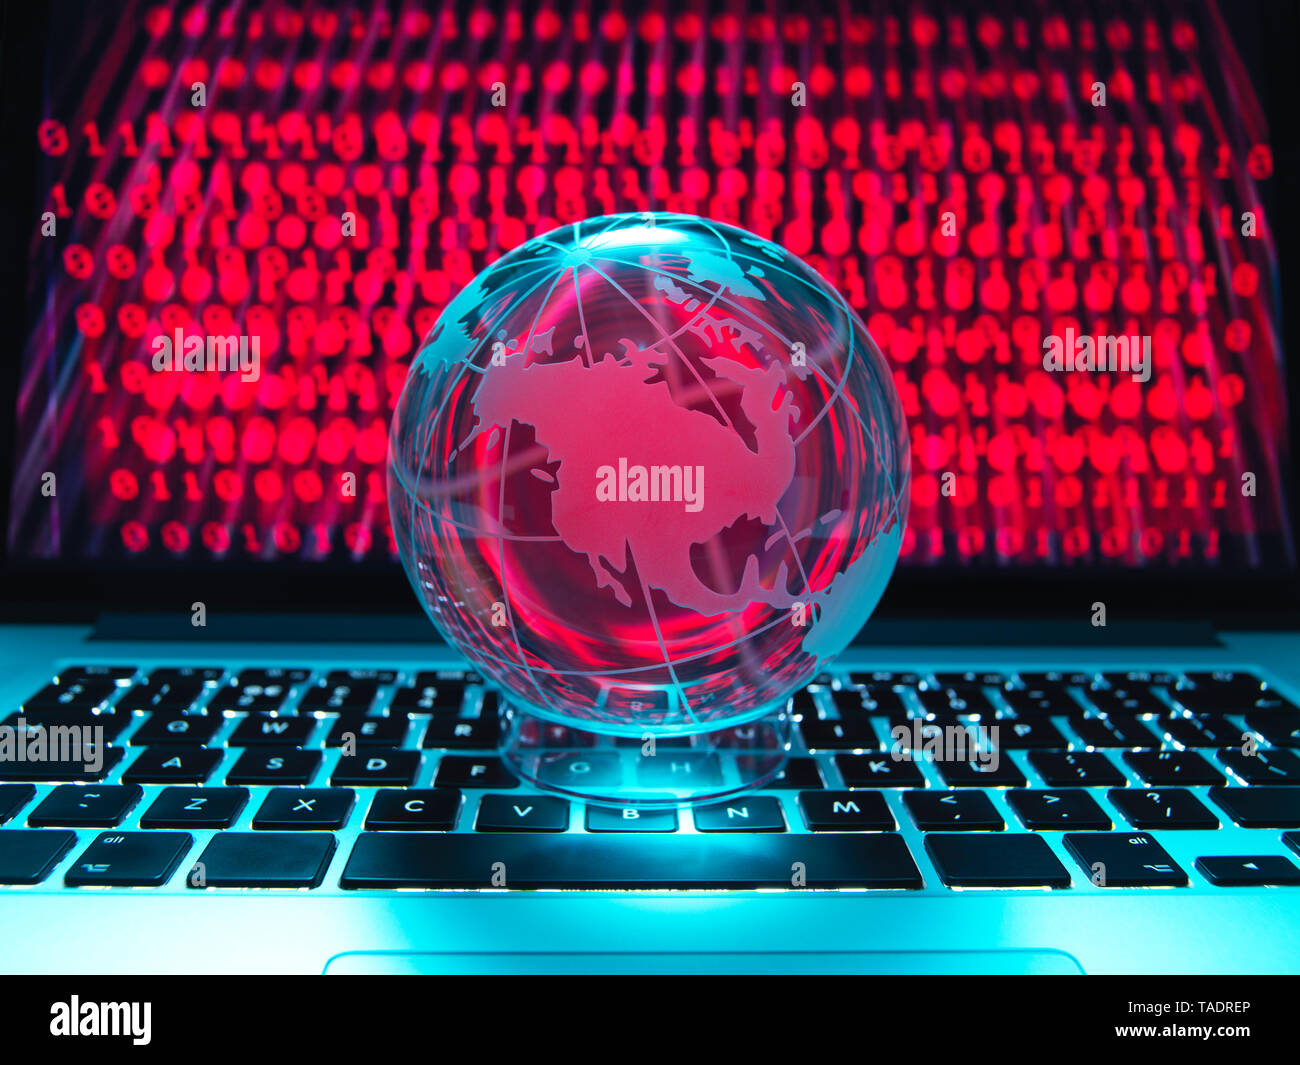 Globus veranschaulicht das Amerika auf einem Laptop Computer mit Bildschirm durch eine Cyber Attack angesteckt worden Stockfoto